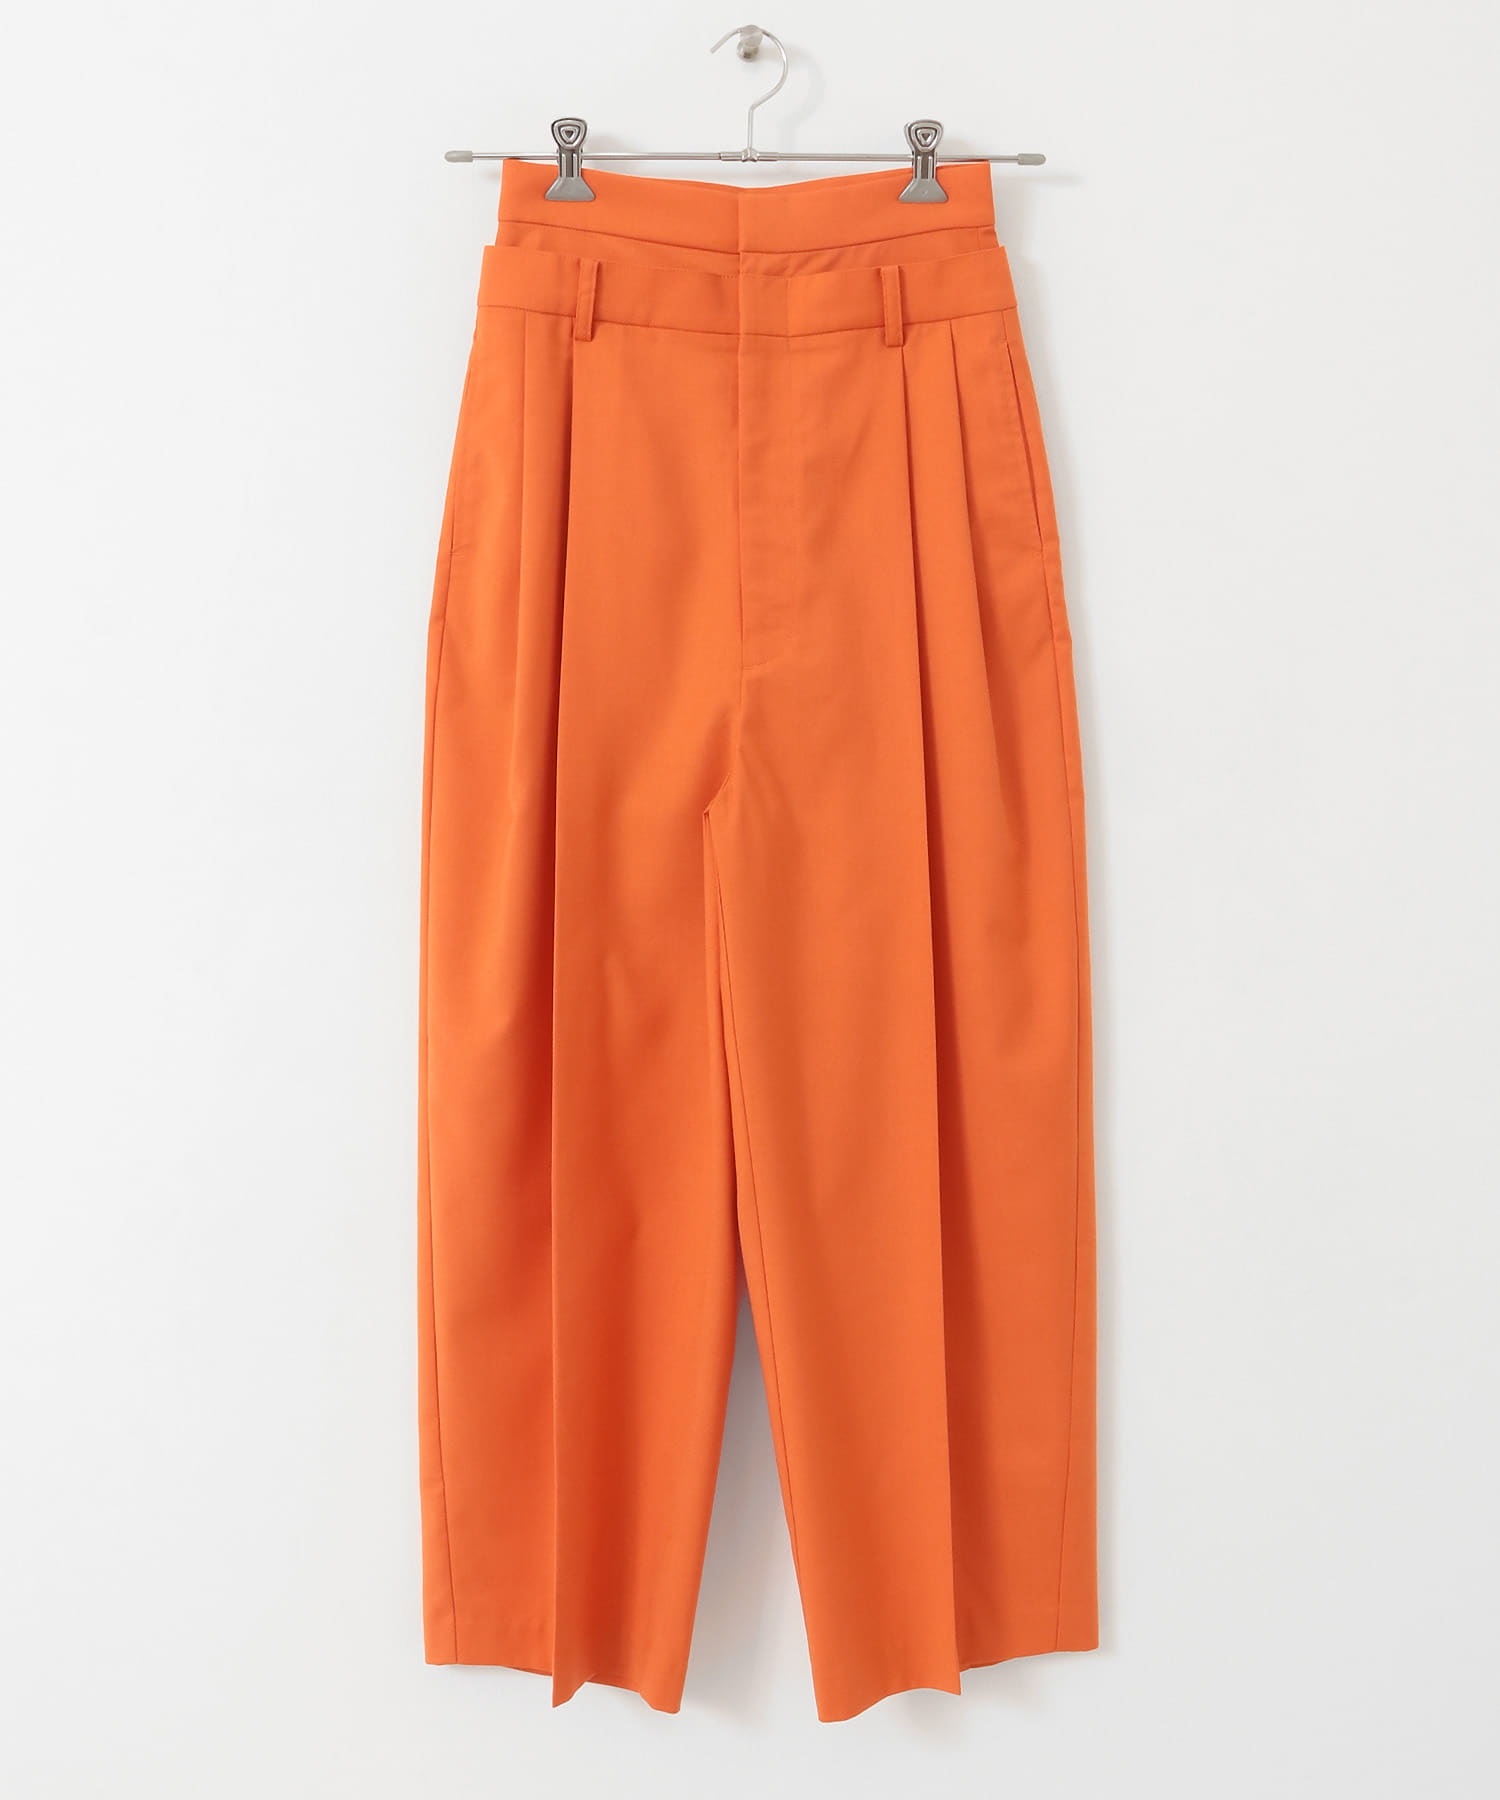 腰頭層次設計長褲(橘色-36-ORANGE)